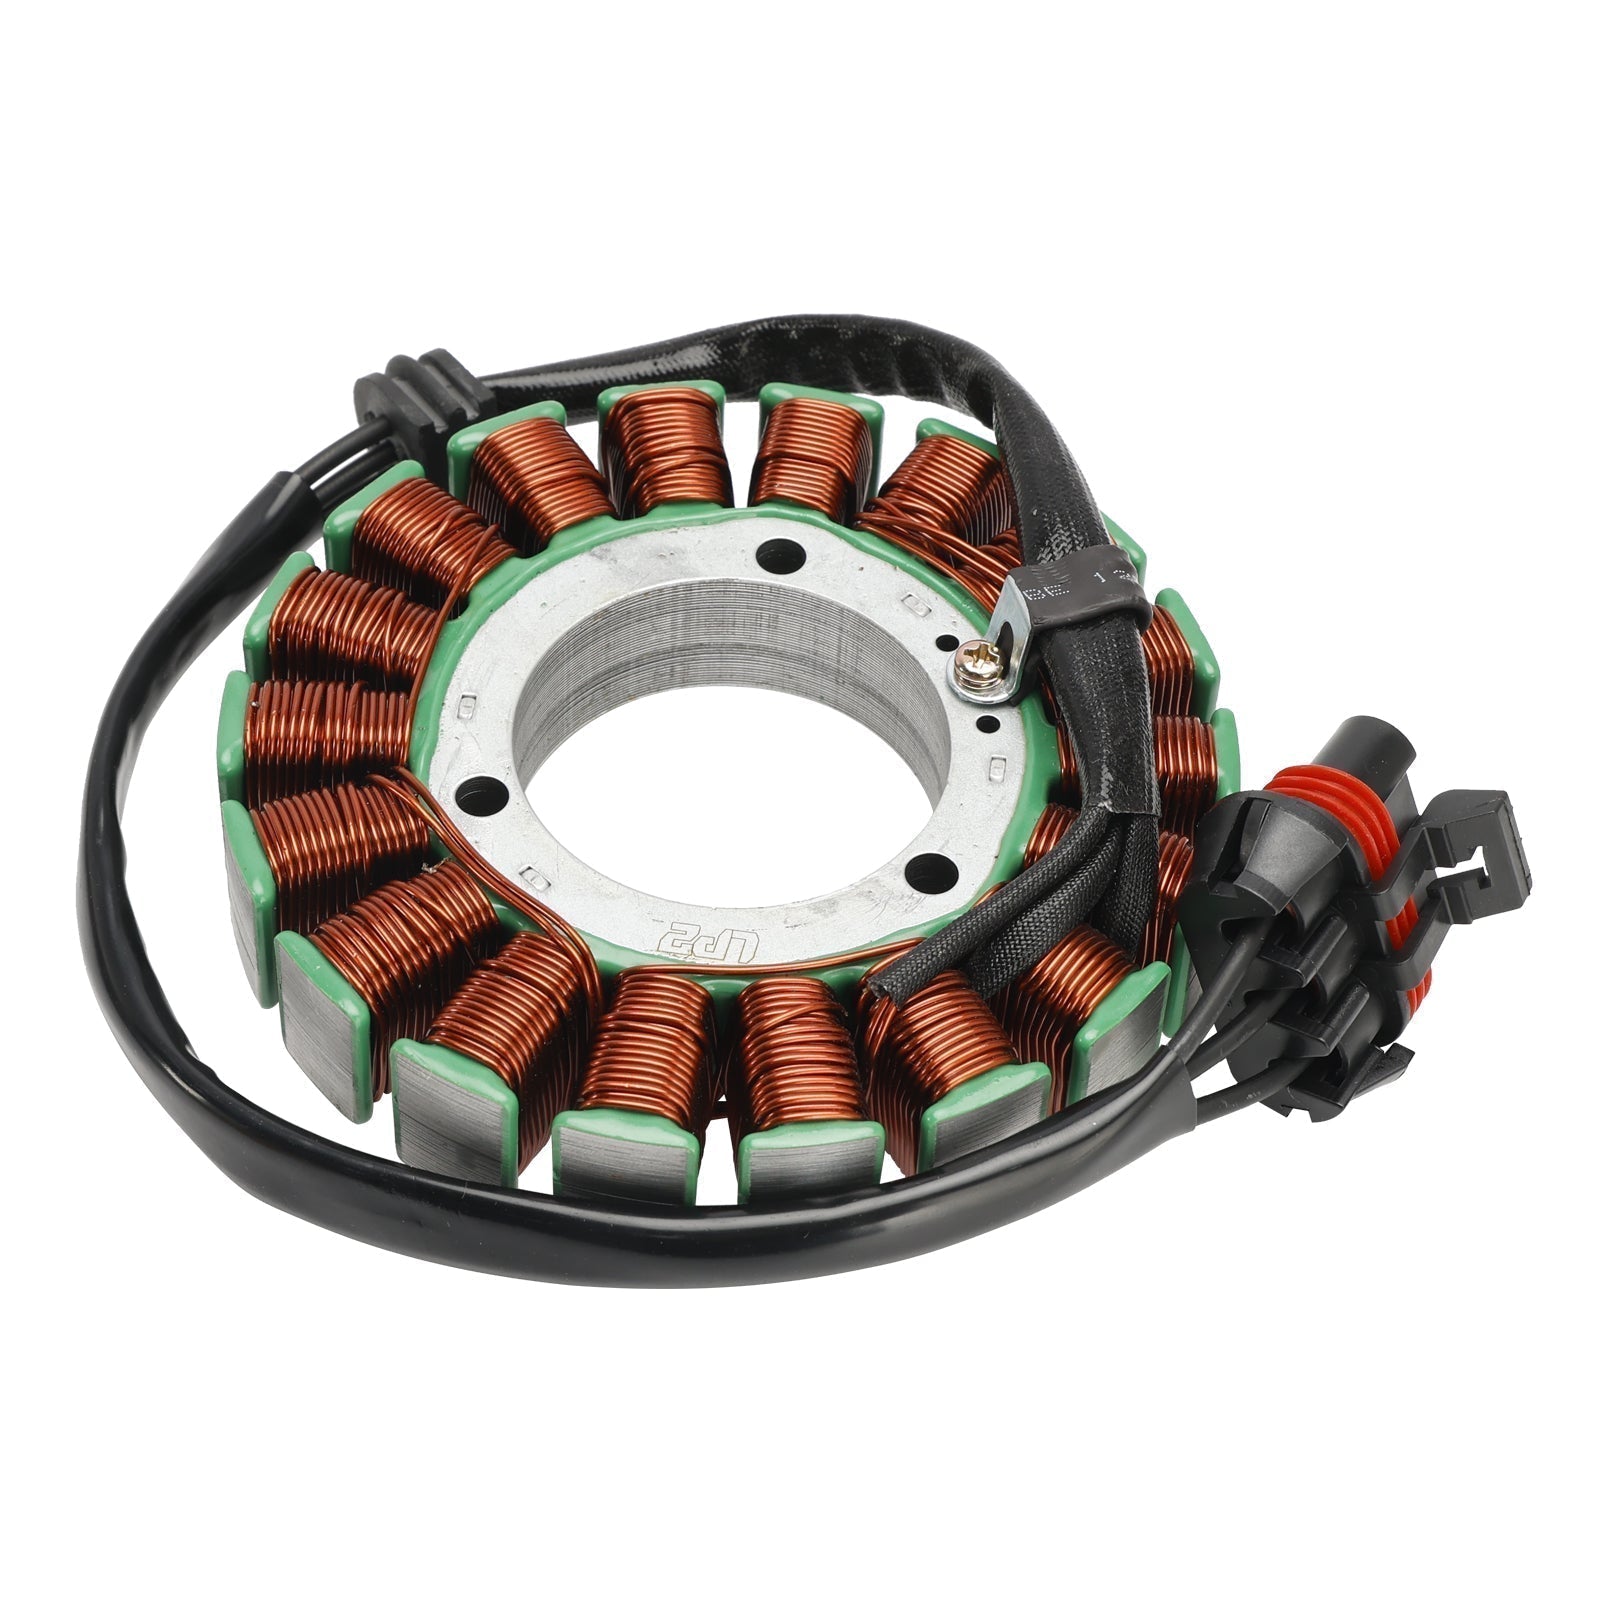 Stator de bobine magnétique Polaris RZR 2021 Turbo S + régulateur de tension + joint Assy 2021 – 1000, 4013970